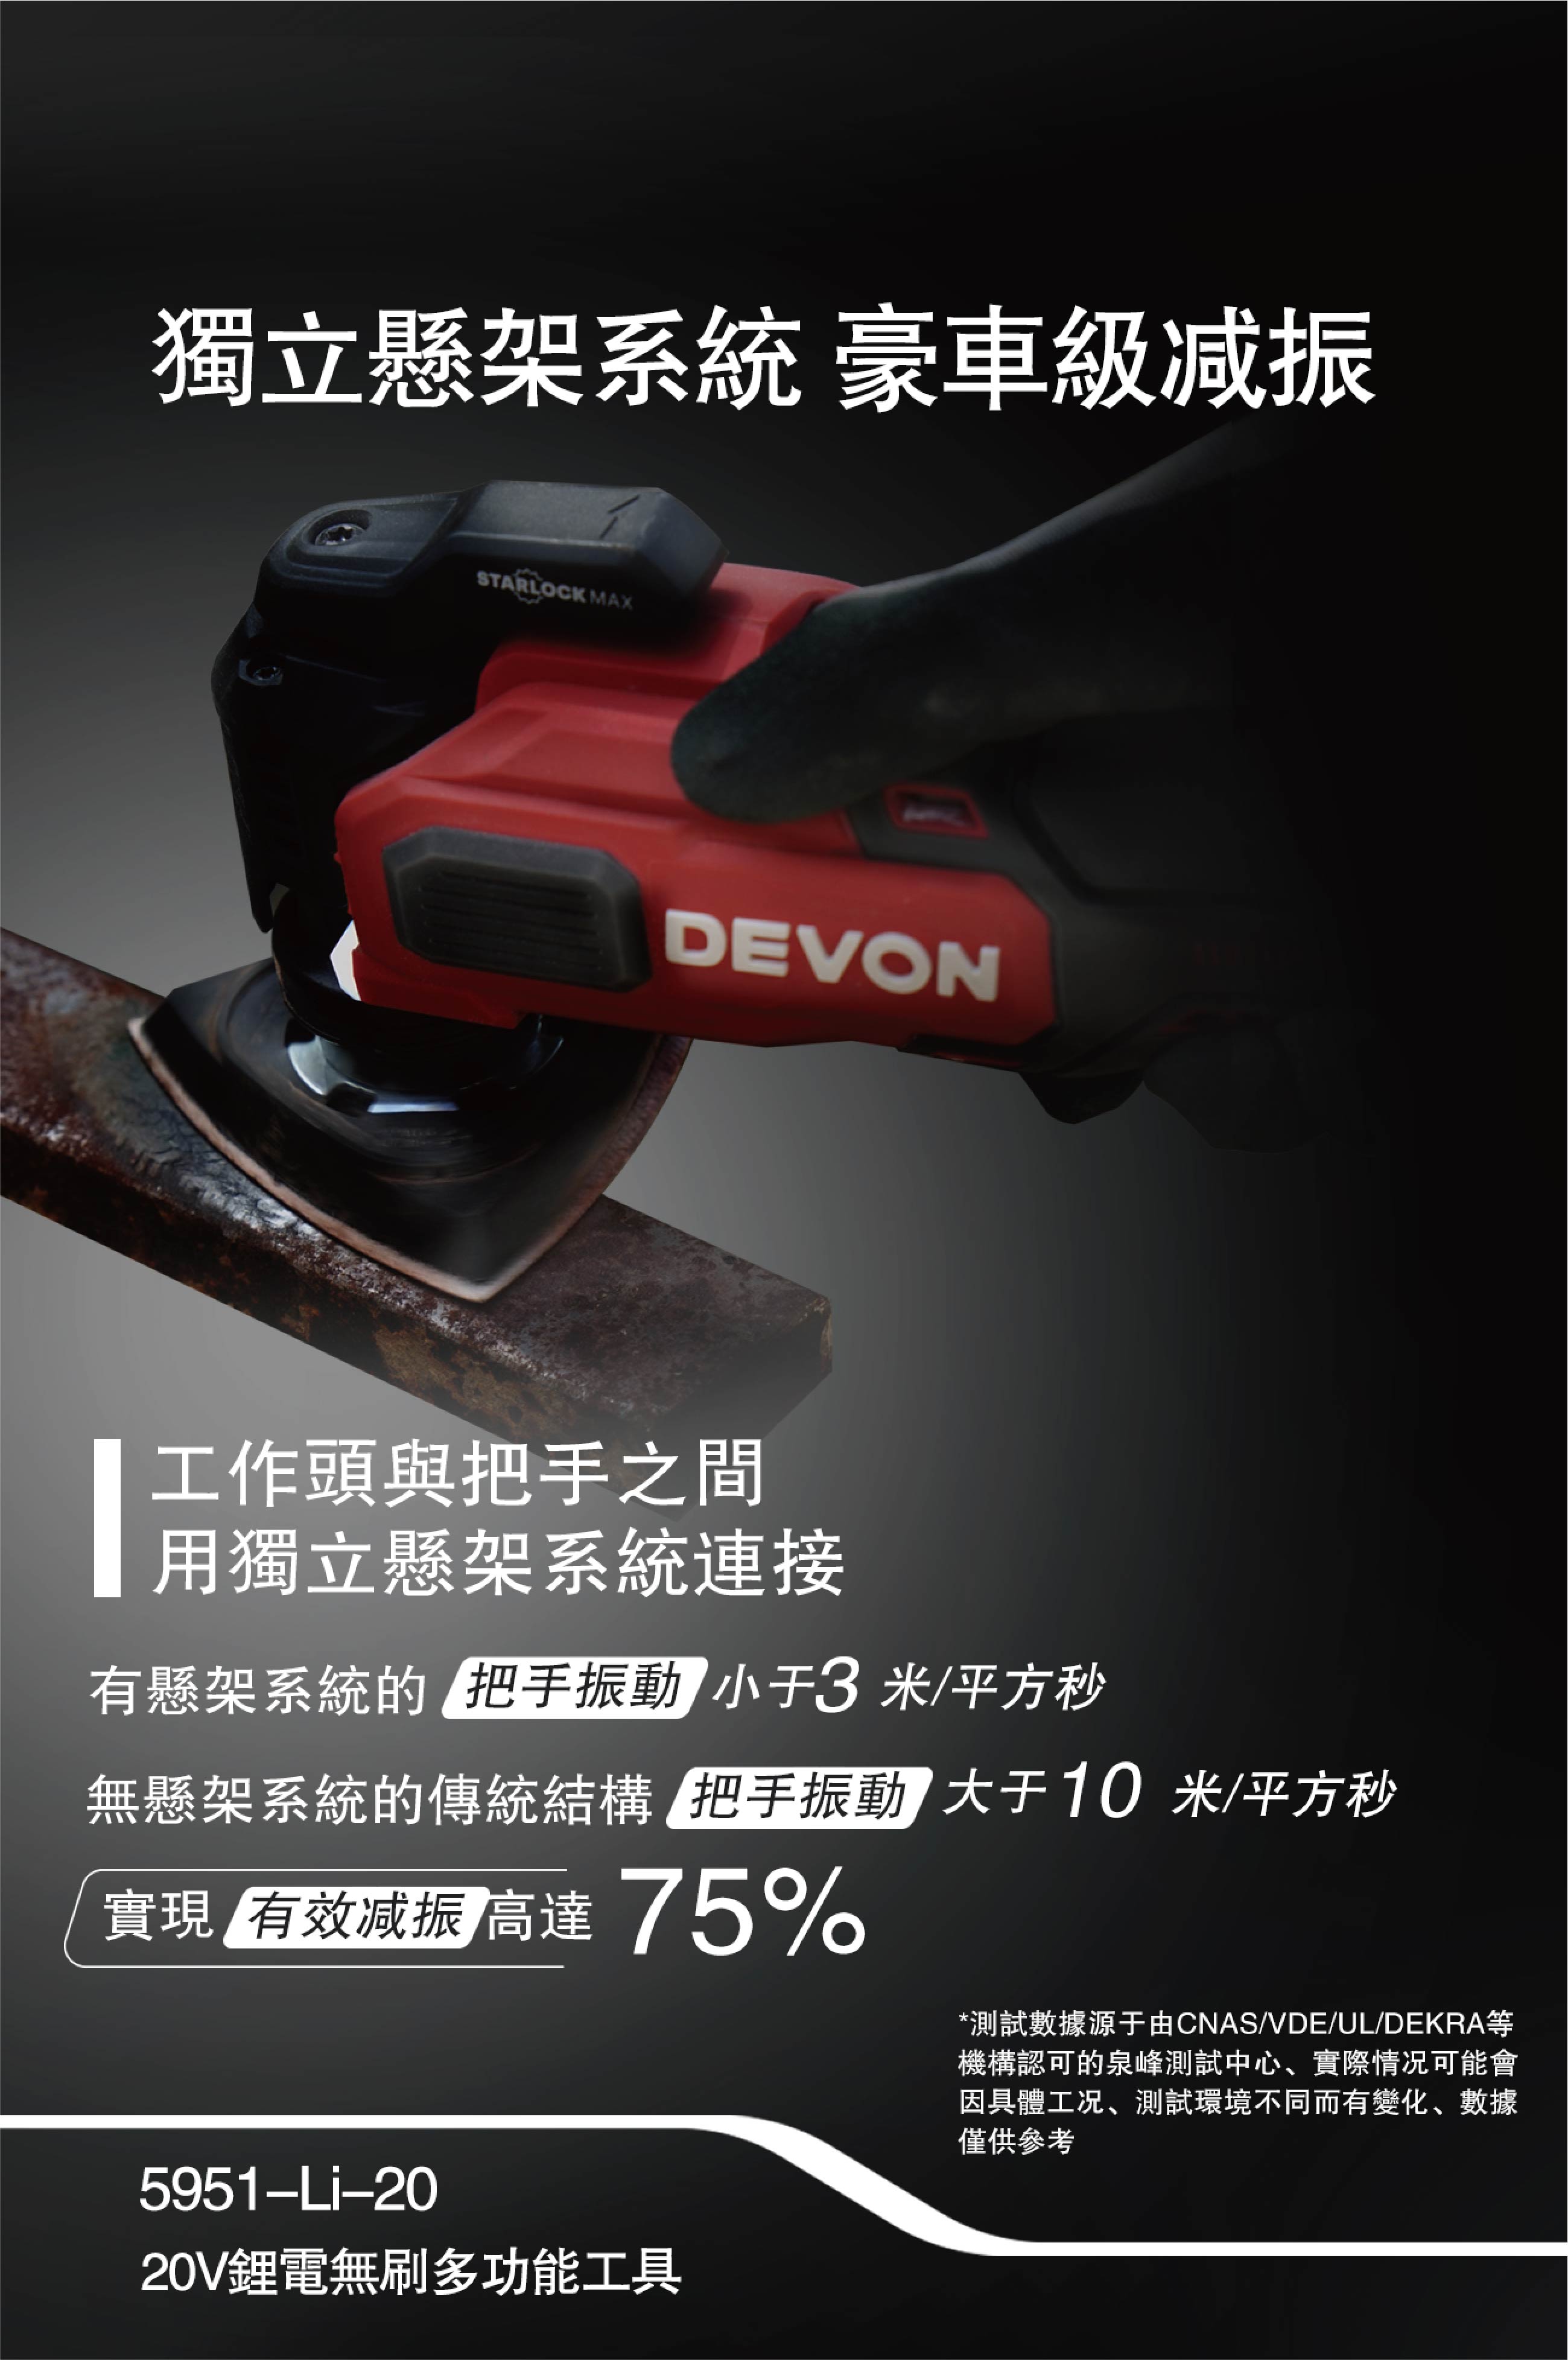 大有DEVON 多功能工具(萬應寶)(鋰20V)(無刷) 5951-LI-20